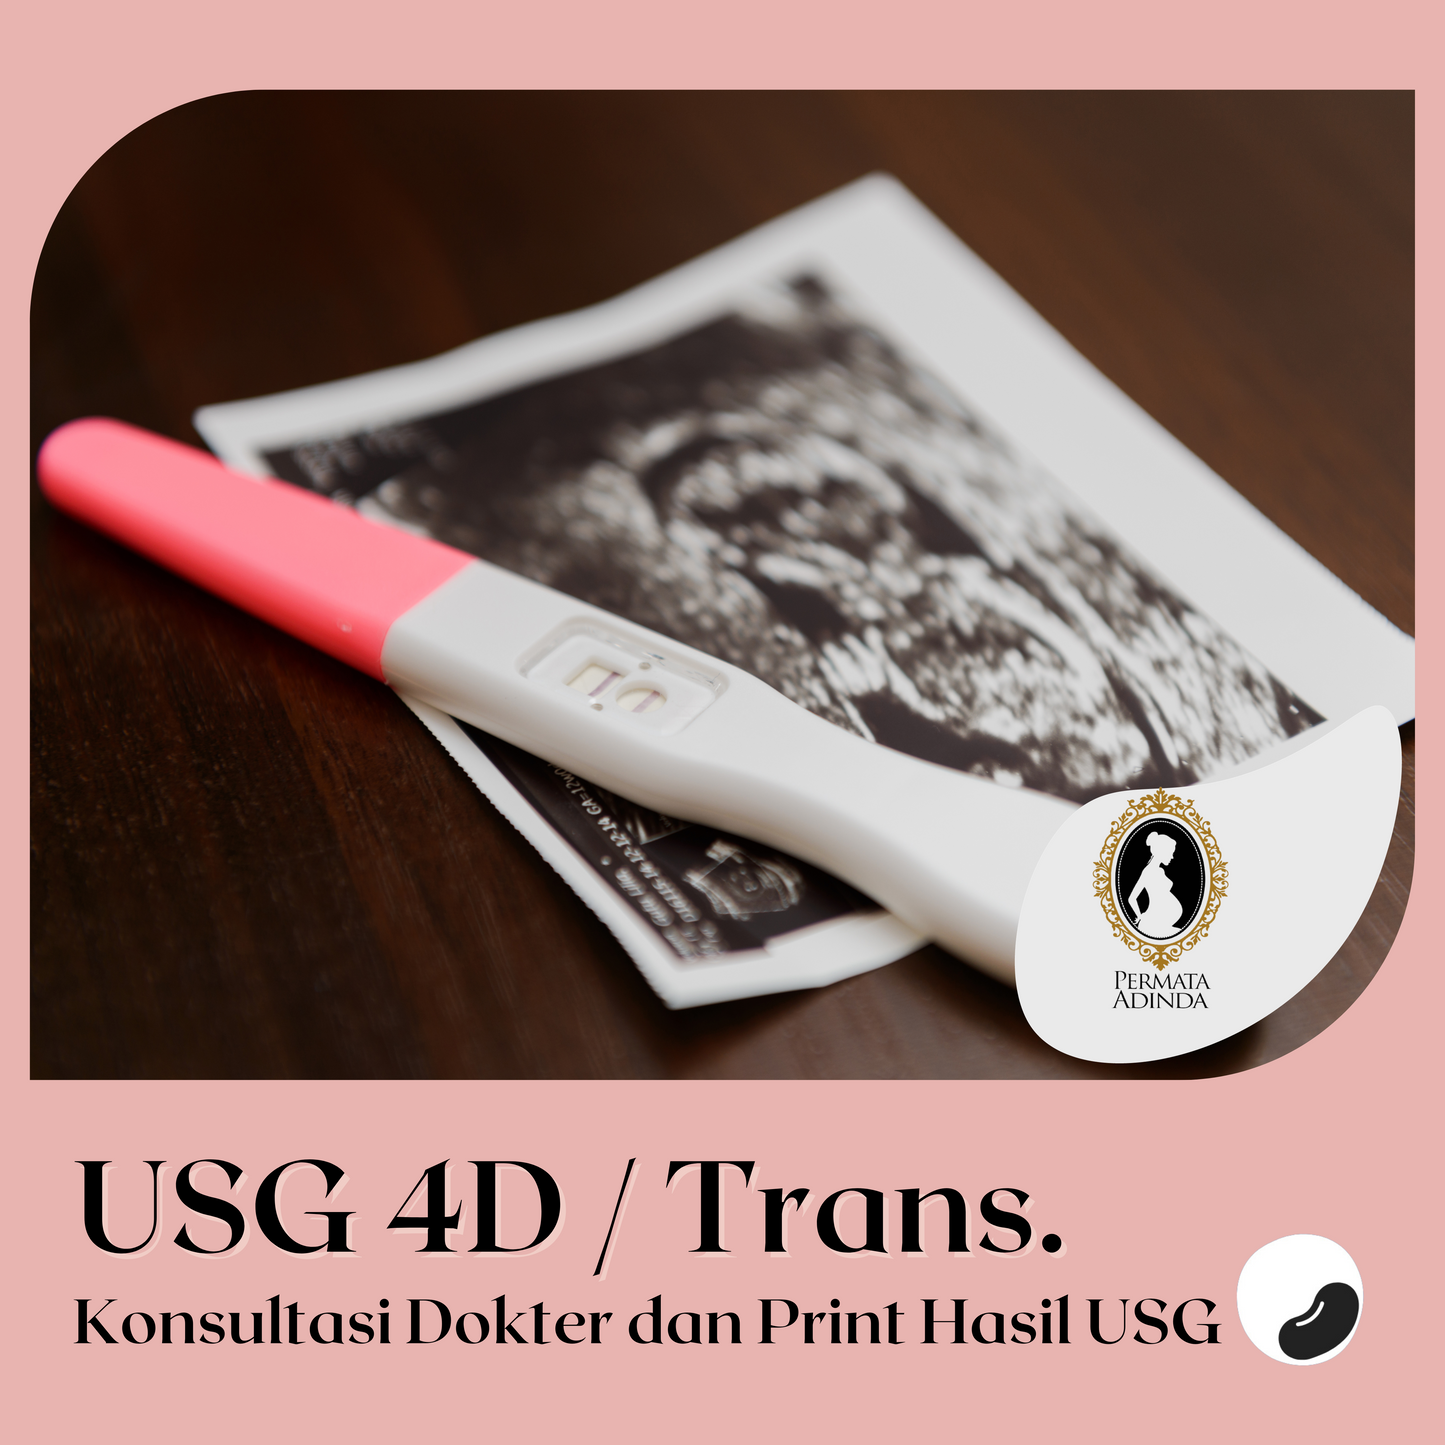 Ultrasound 4D / Transvaginal